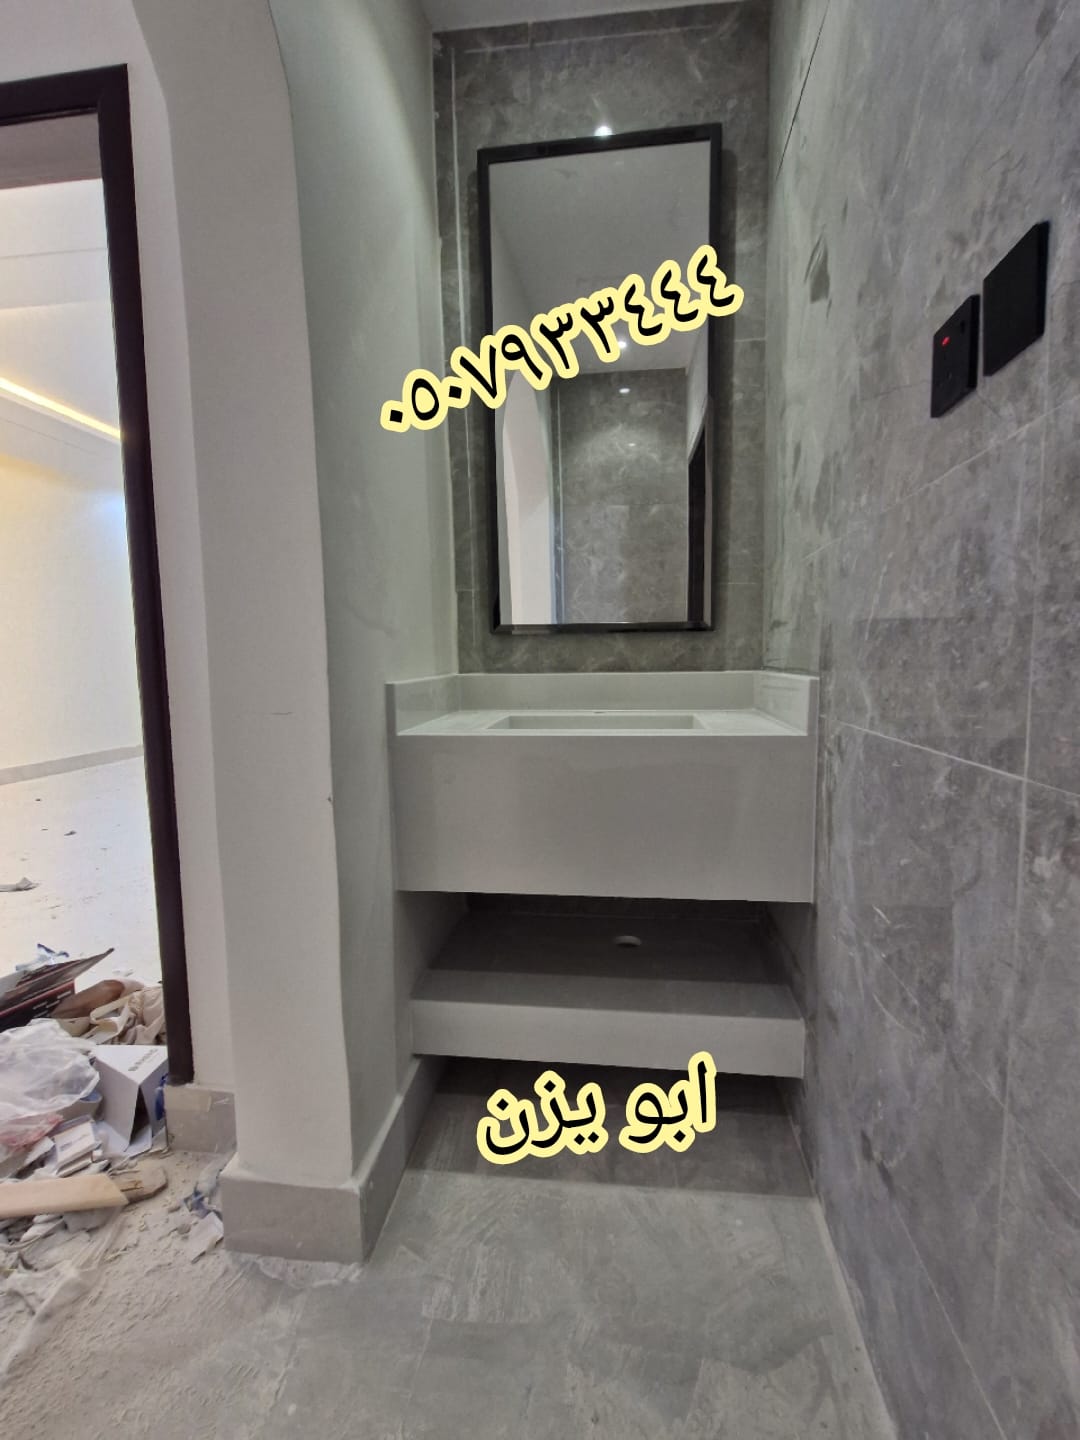                                                  مغاسل رخام , تركيب وتفصيل مغاسل رخام حمامات في مدينة الرياض